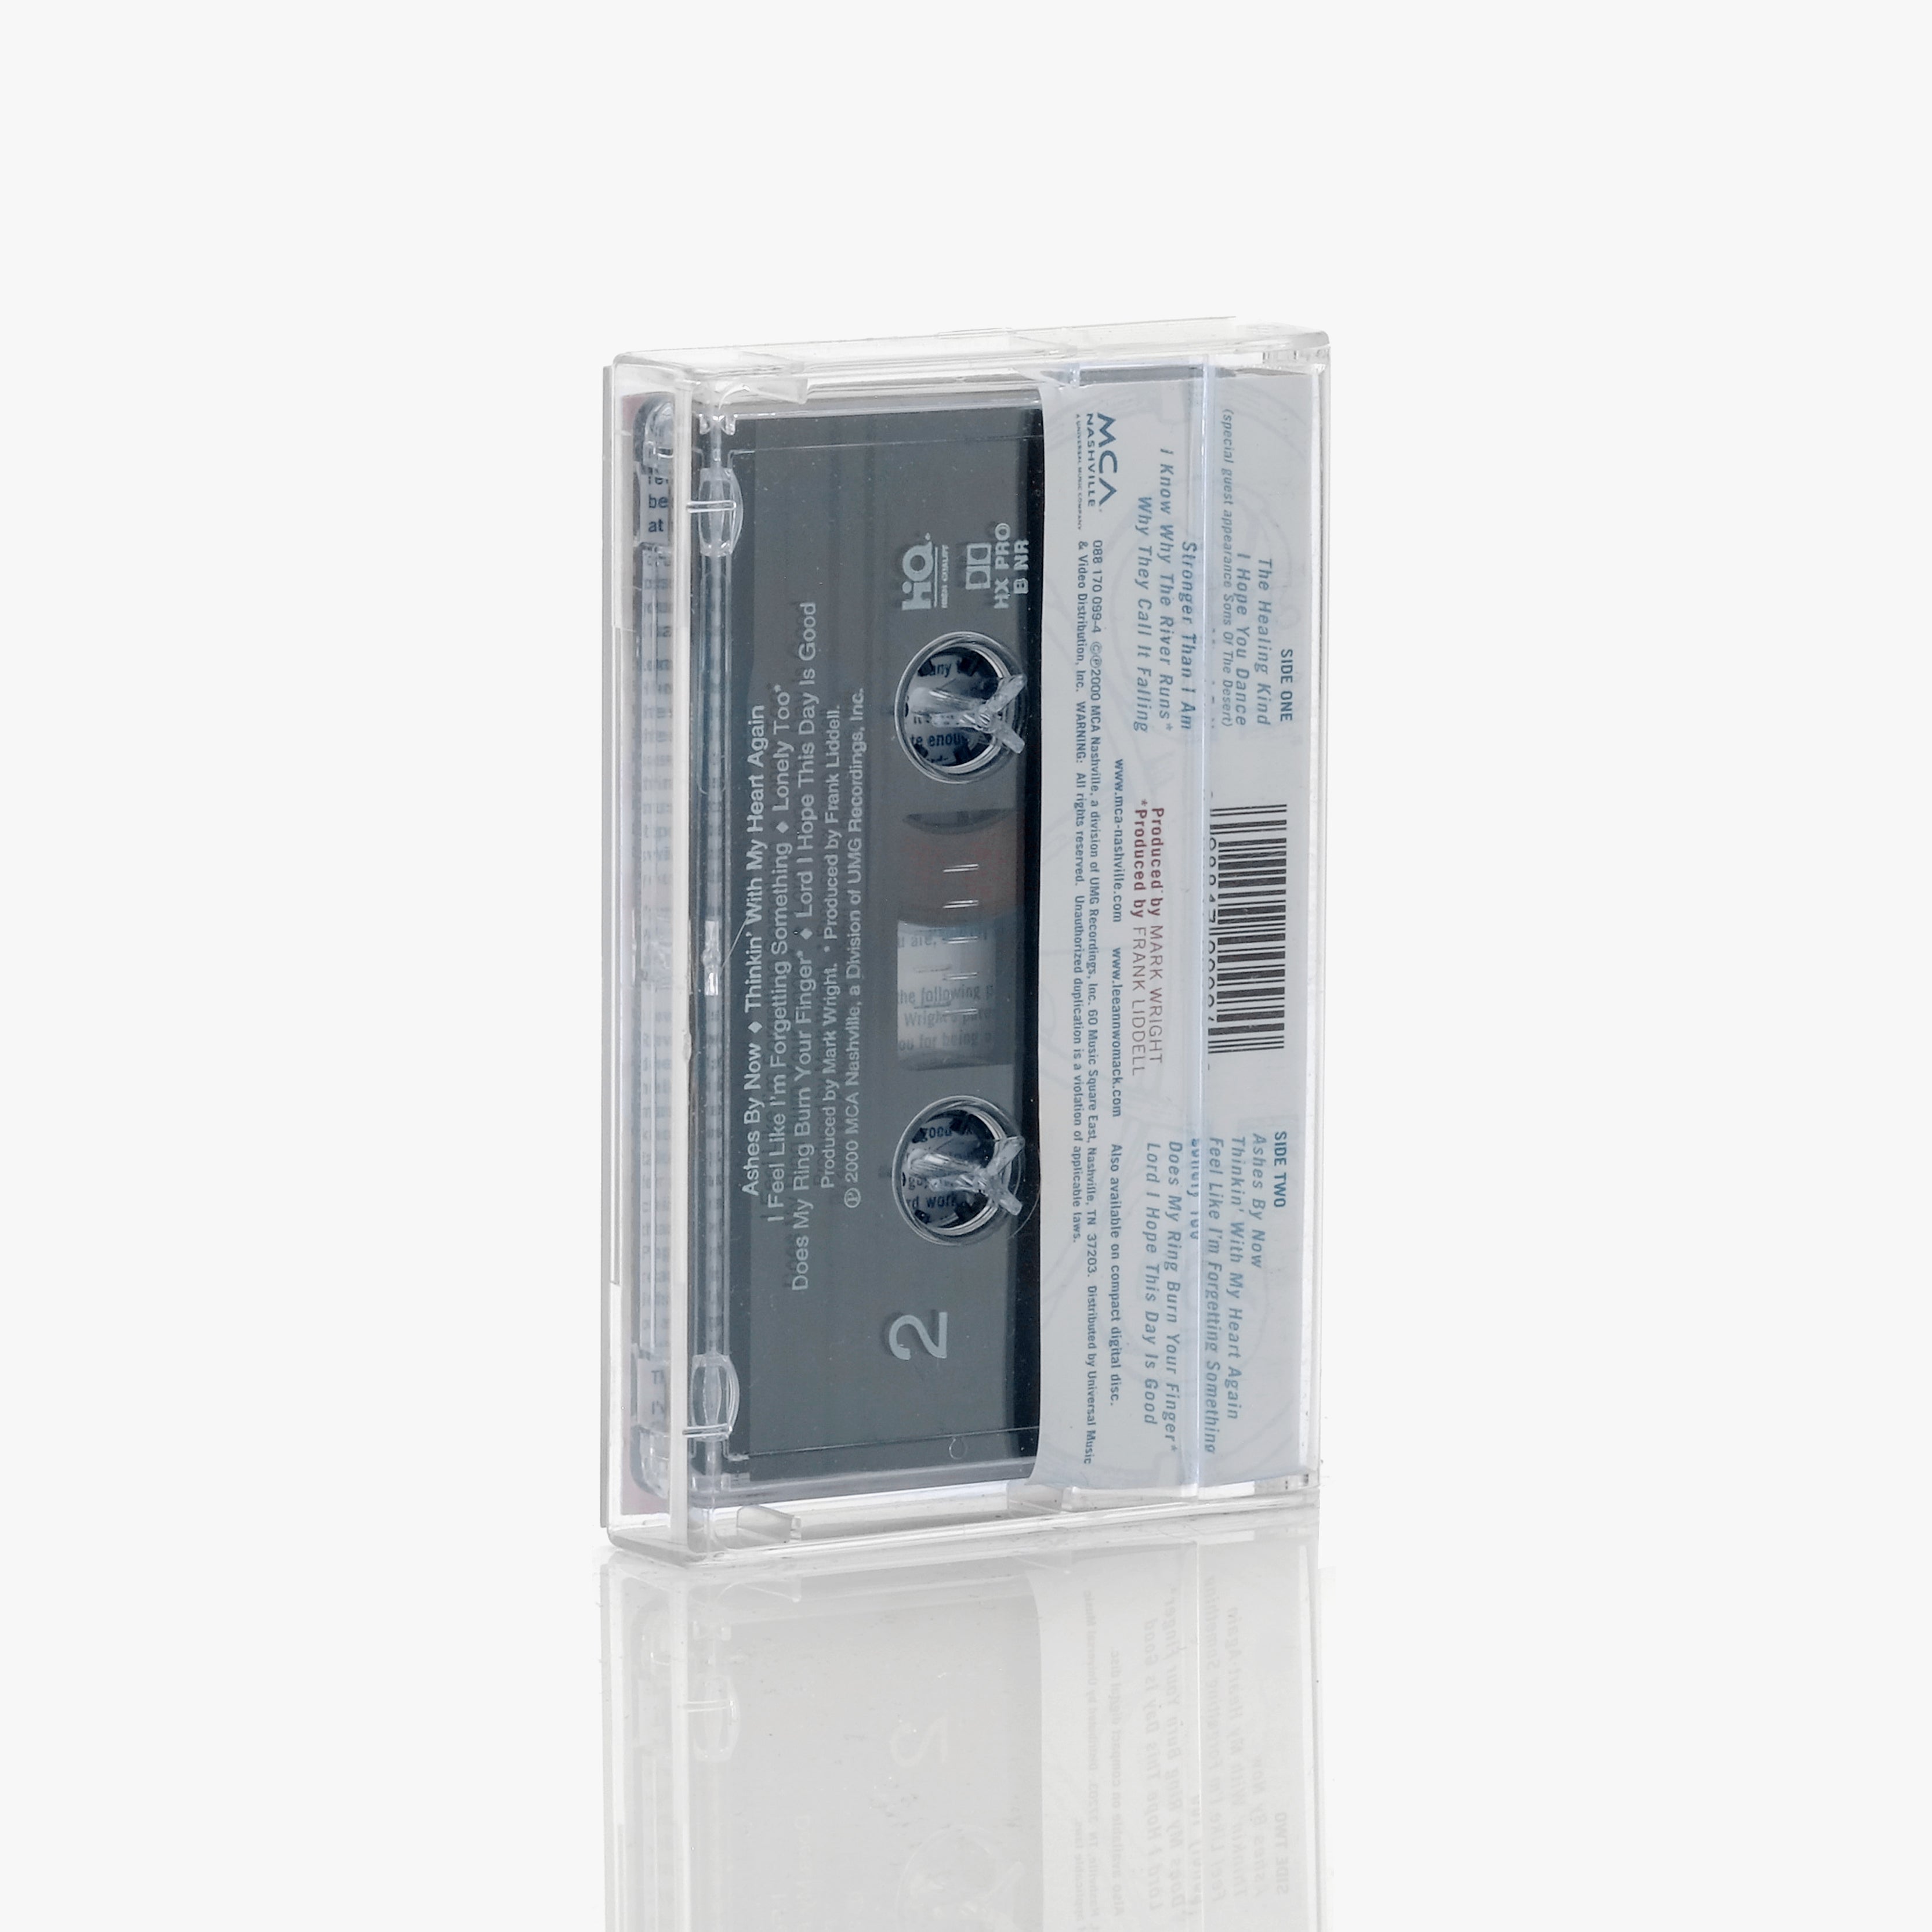 Lee Ann Womack - I Hope You Dance Cassette Tape